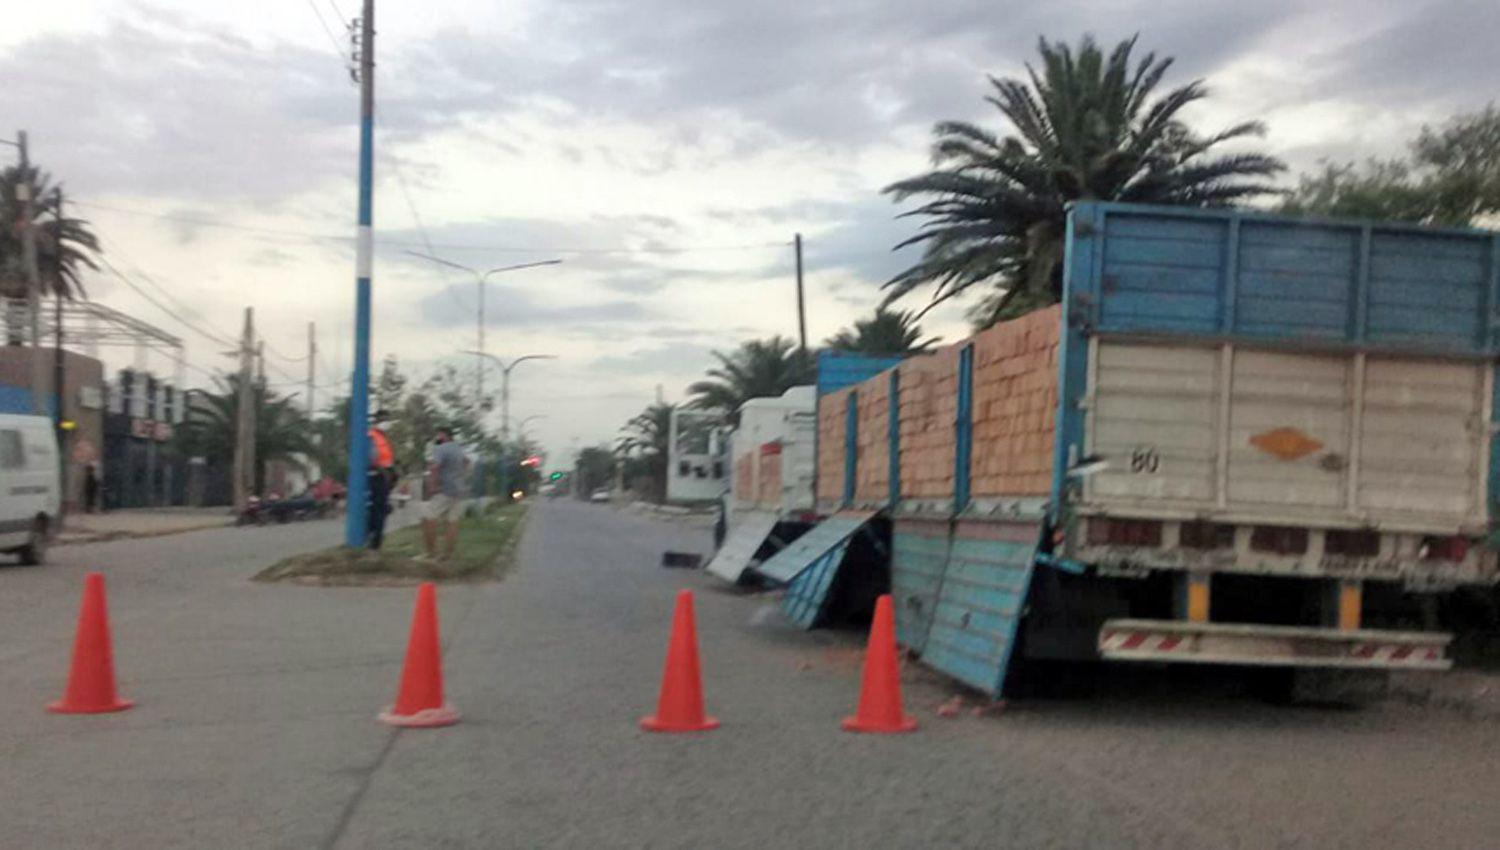 Los camioneros sospechosos  de traer cocaiacutena desde Rosario  a Antildeatuya seguiraacuten detenidos